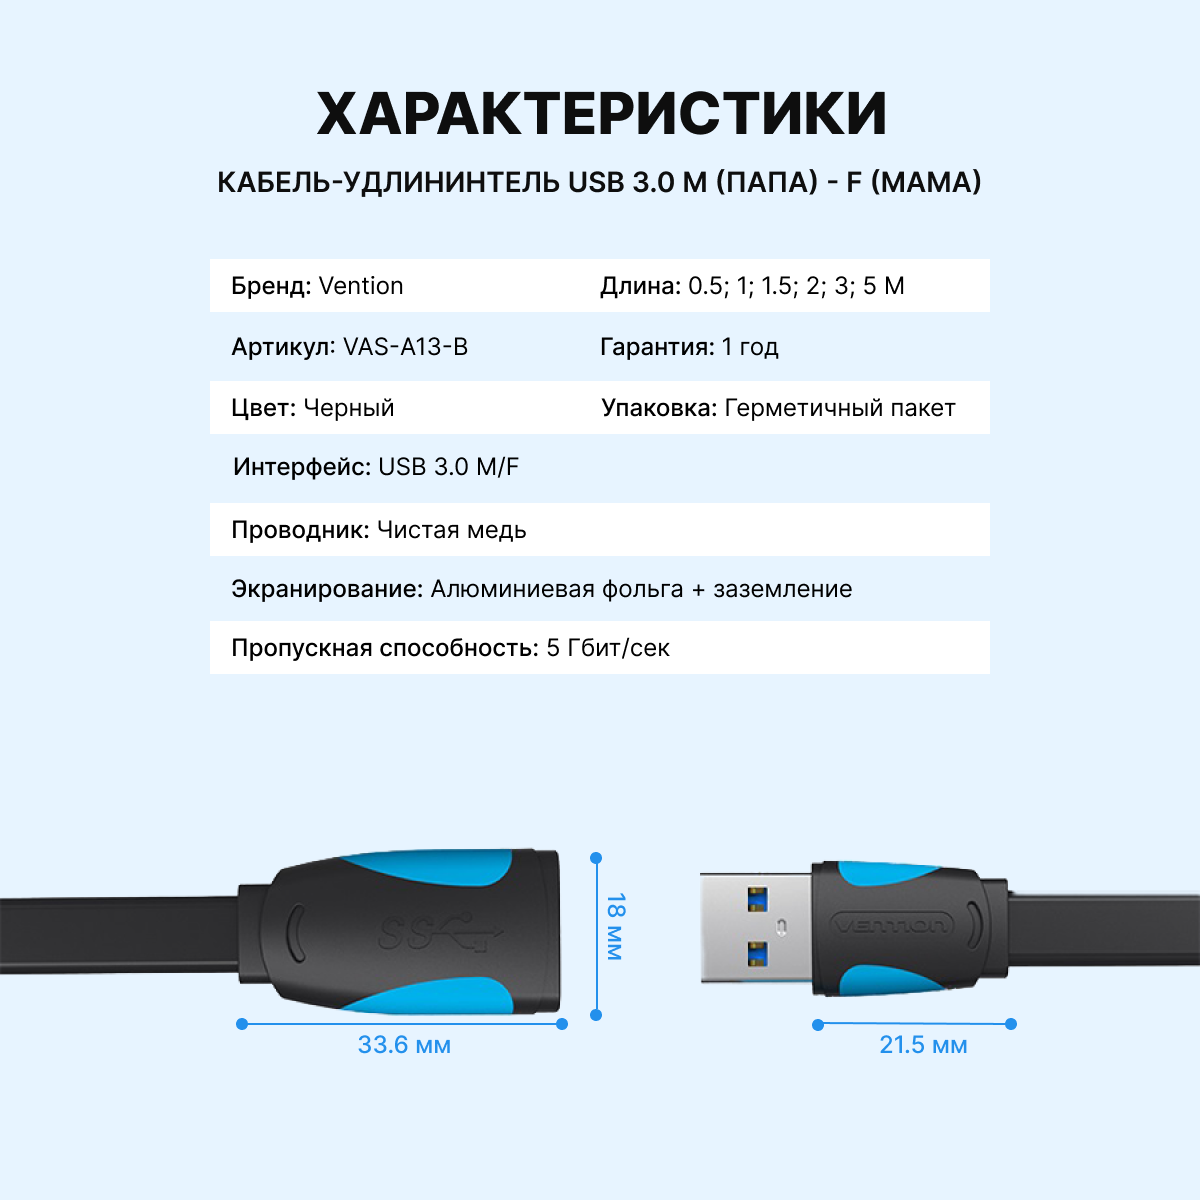 Vention Кабель удлинитель USB 3.0 AM(папа) AF(мама) переходник, провод для ноутбука, длина 1 метр арт. VAS-A13-B100